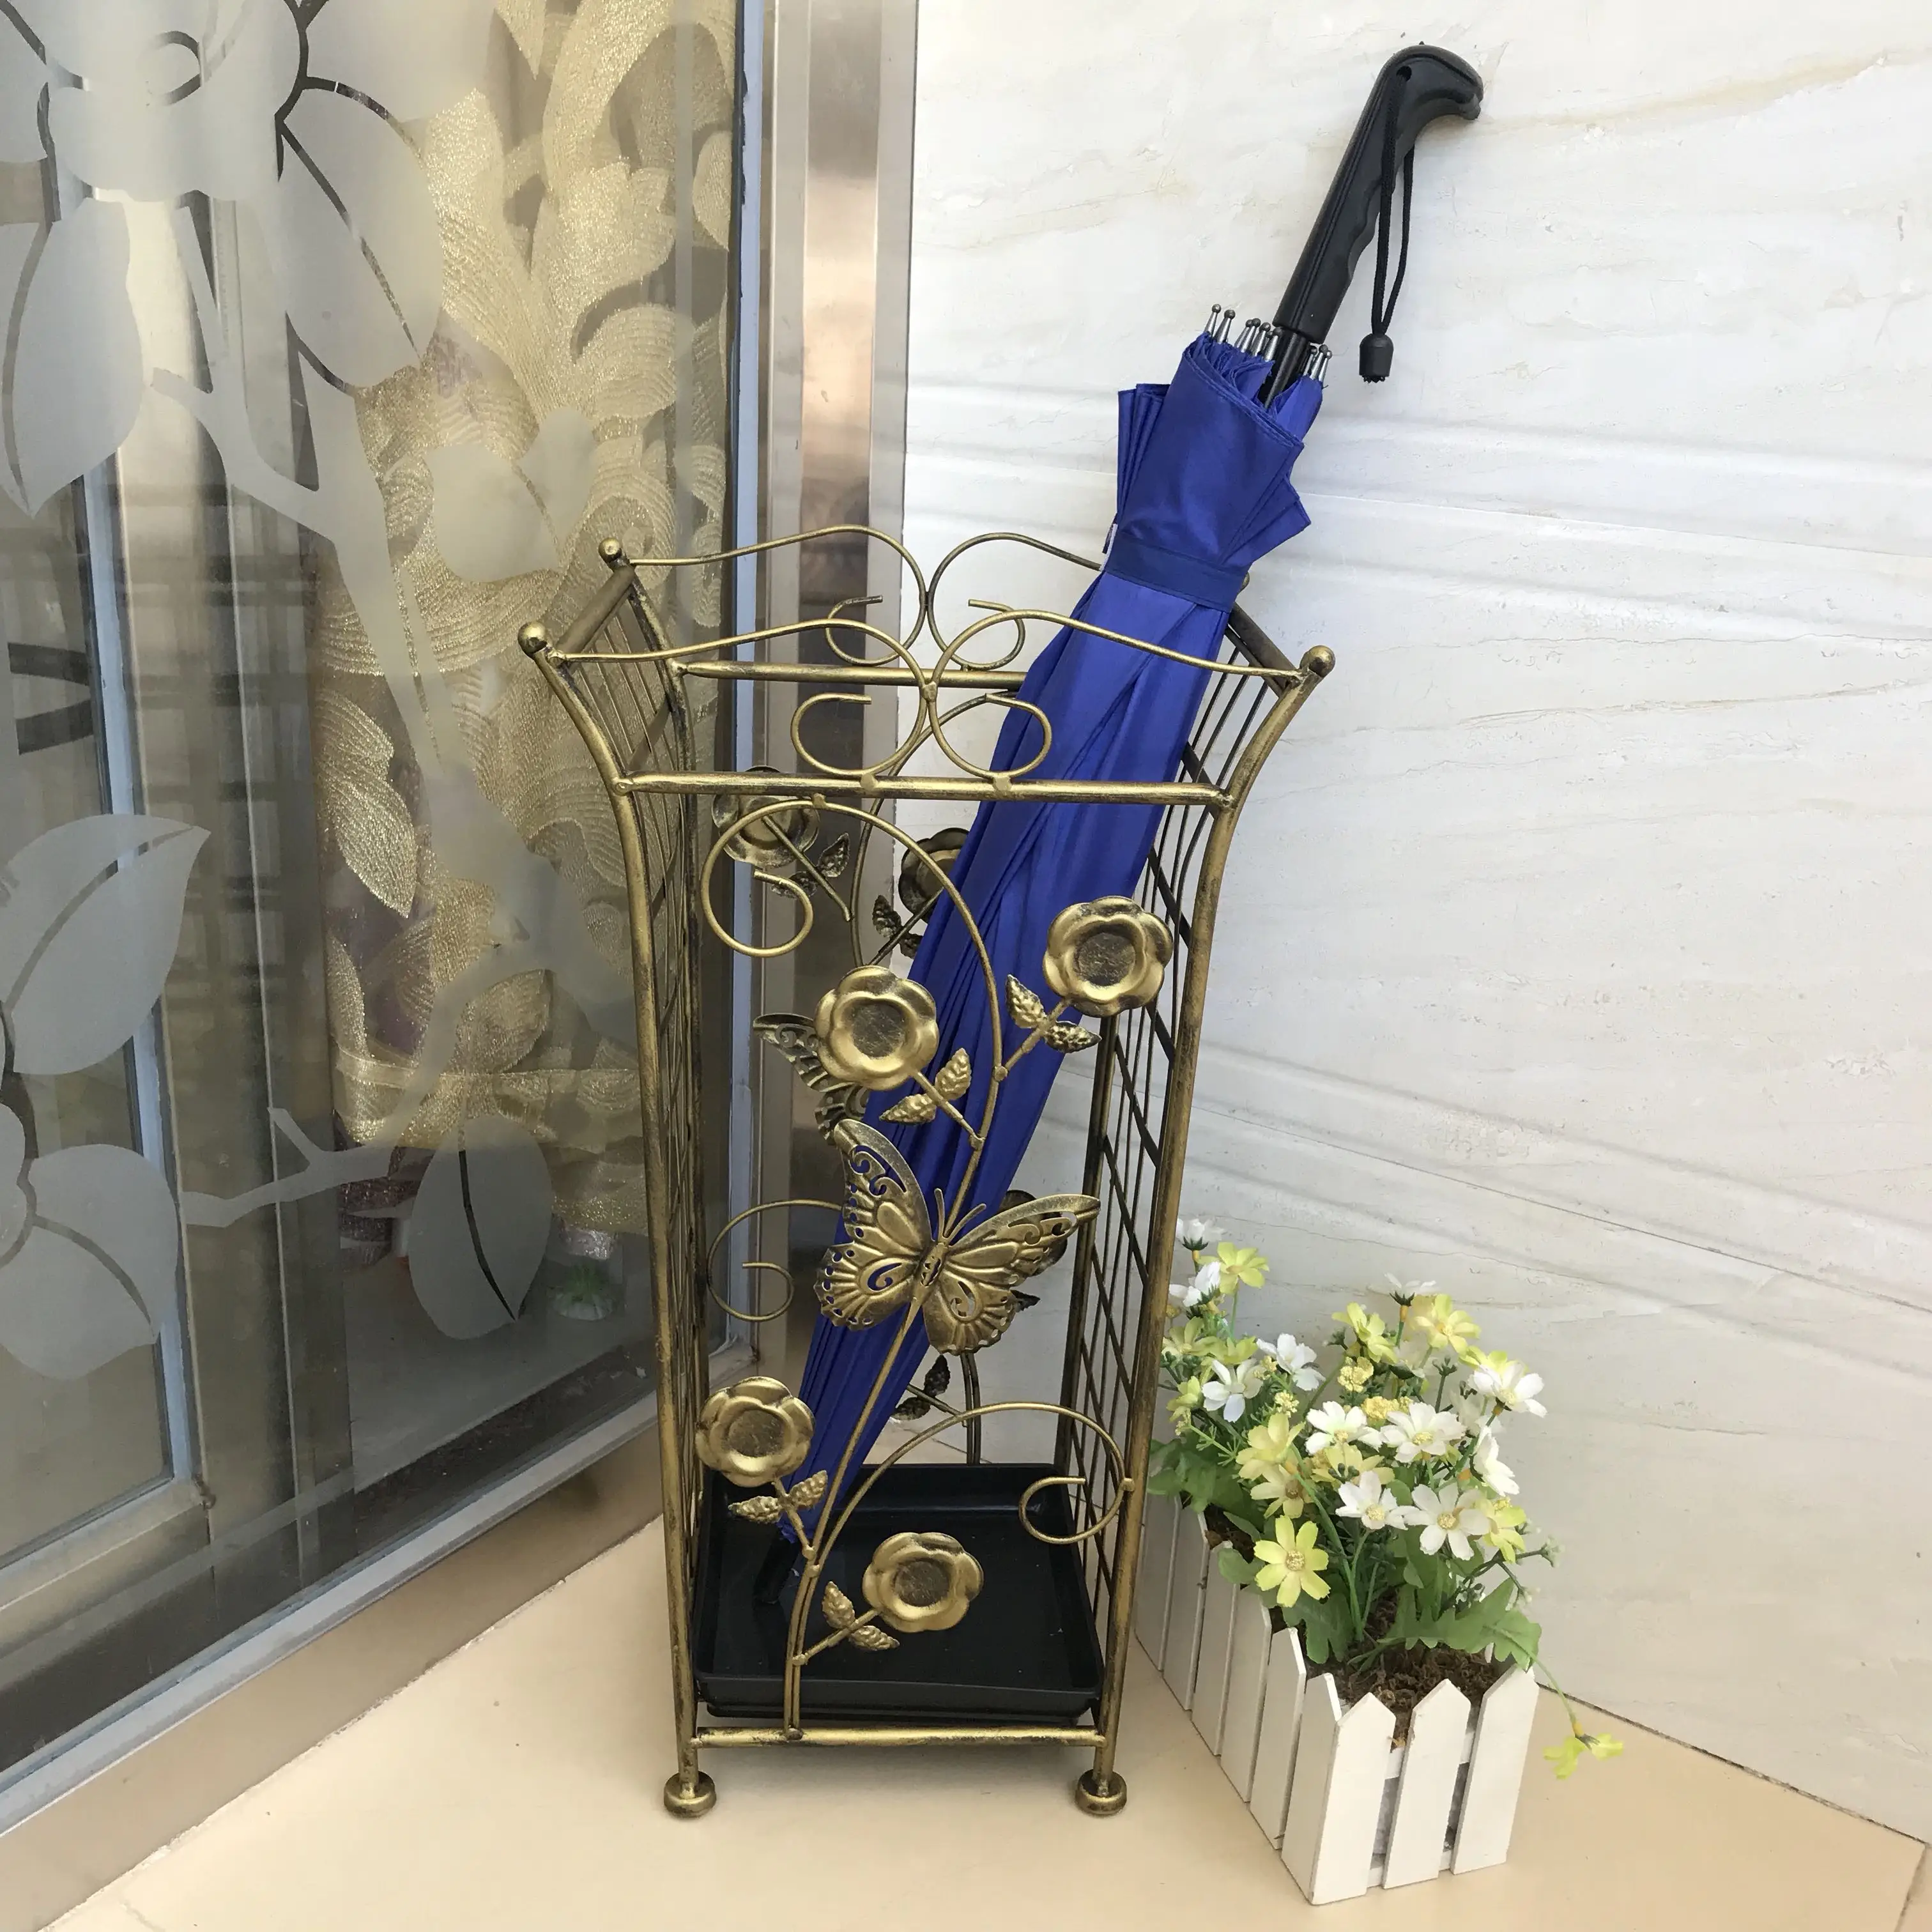 

Американская Европейская ретро железная художественная Бытовая подставка для зонта лобби гостиница Зонт ведро креативная стойка для хран...